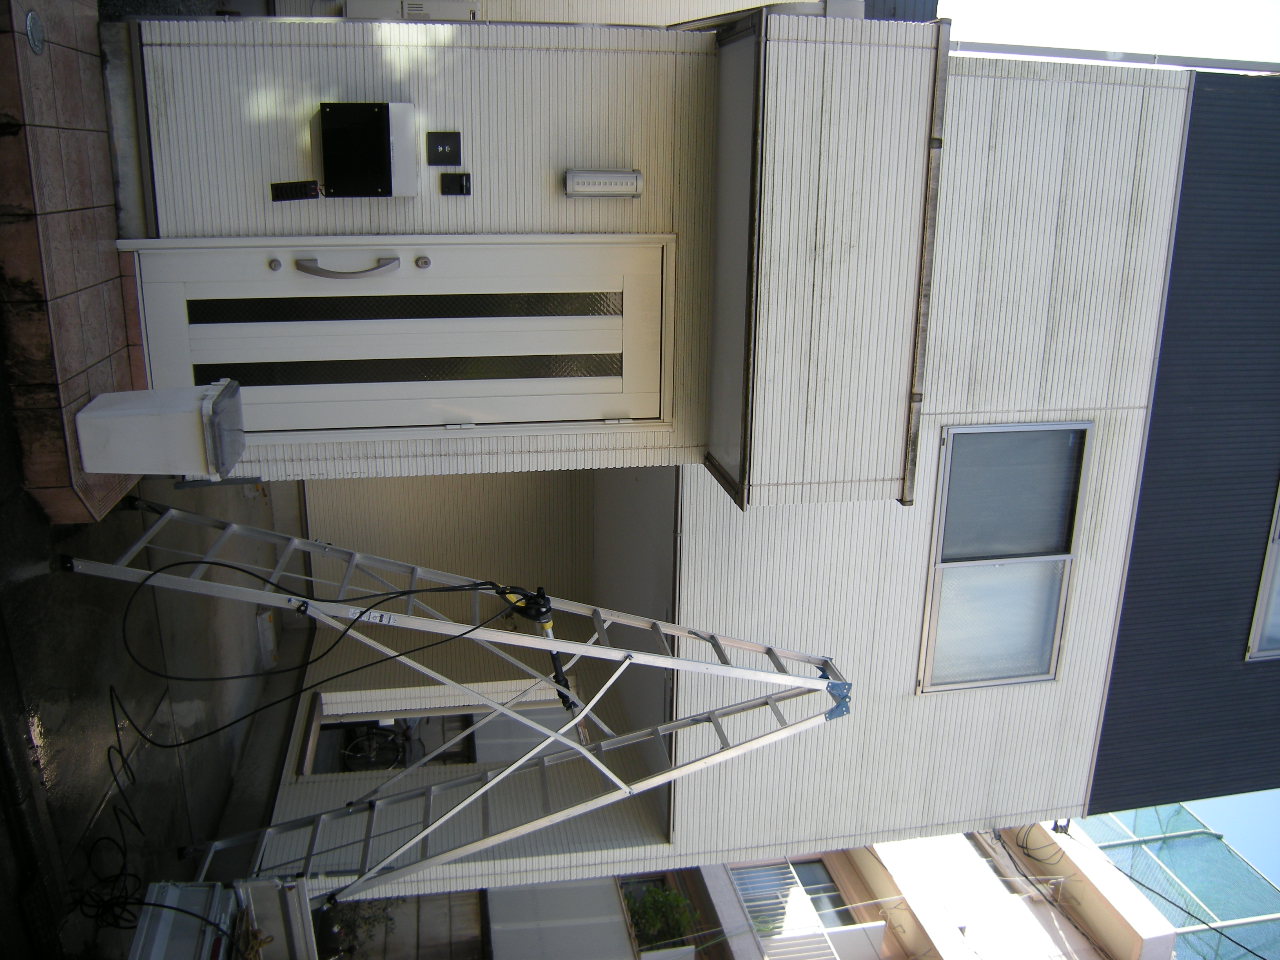 名古屋市 高圧洗浄 外壁 高圧洗浄機 コンクリ レンガ ブロック 車庫 玄関 門柱